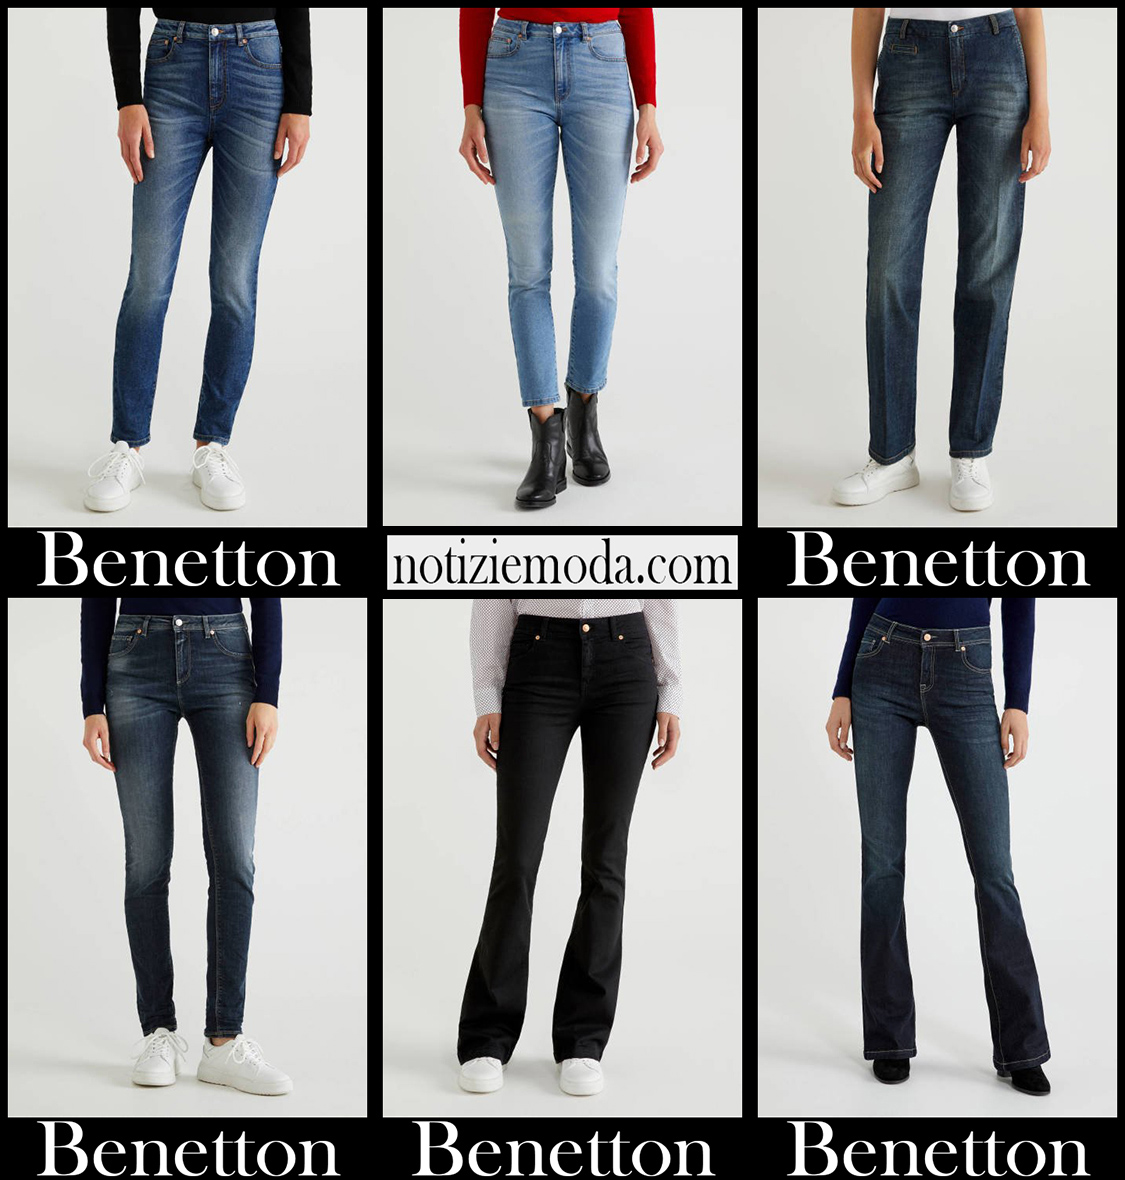 Nuovi arrivi jeans Benetton 2021 abbigliamento donna